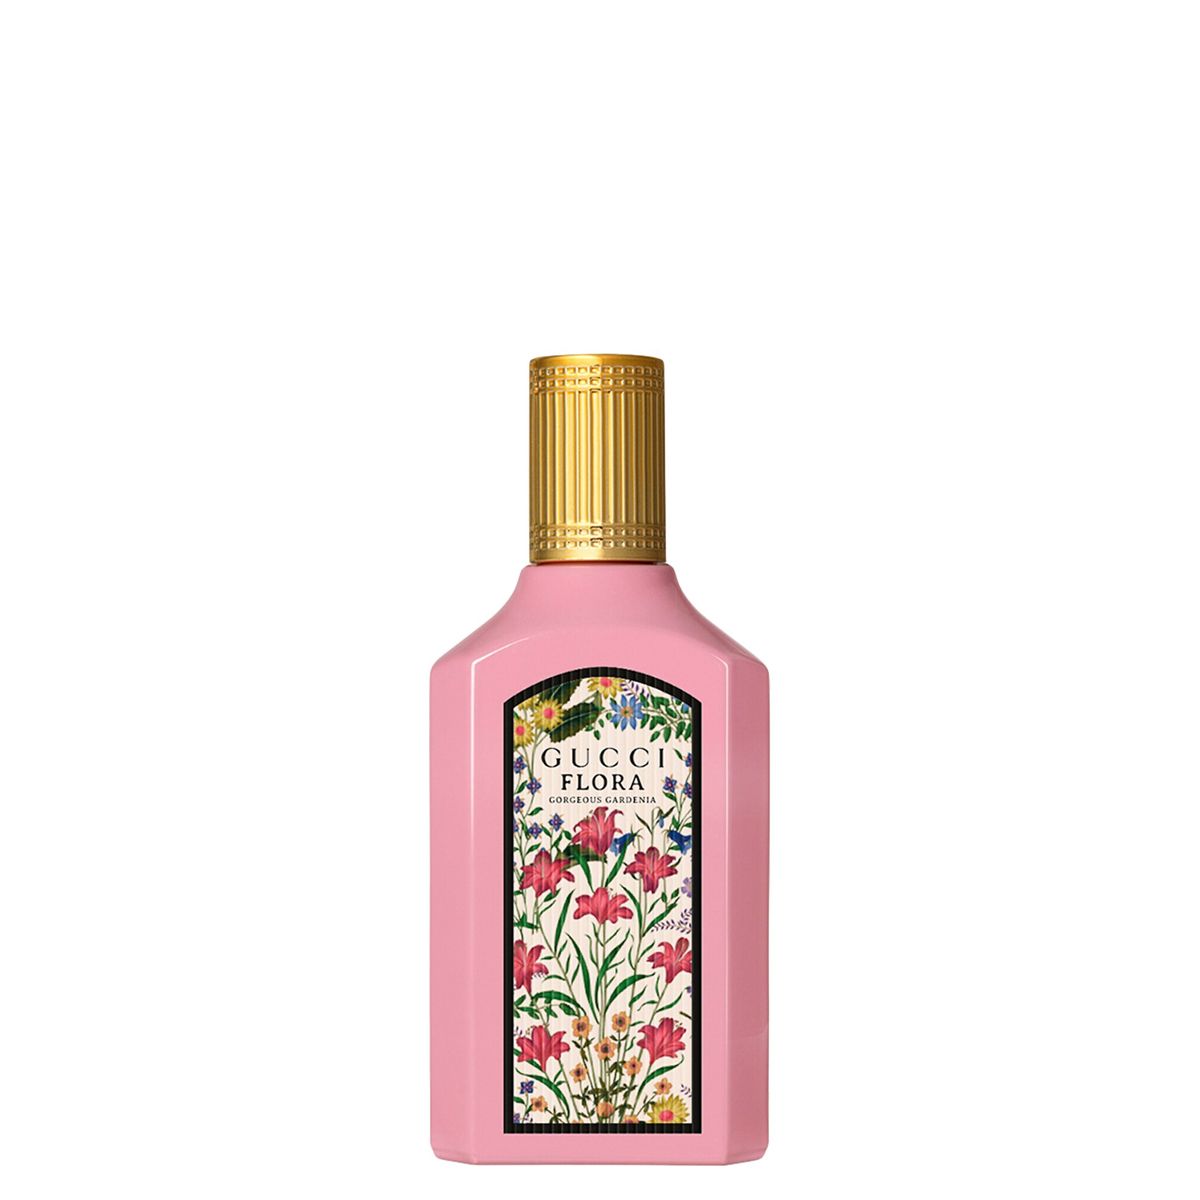  Gucci Flora Gorgeous Gardenia Eau de Parfum Mini Size 